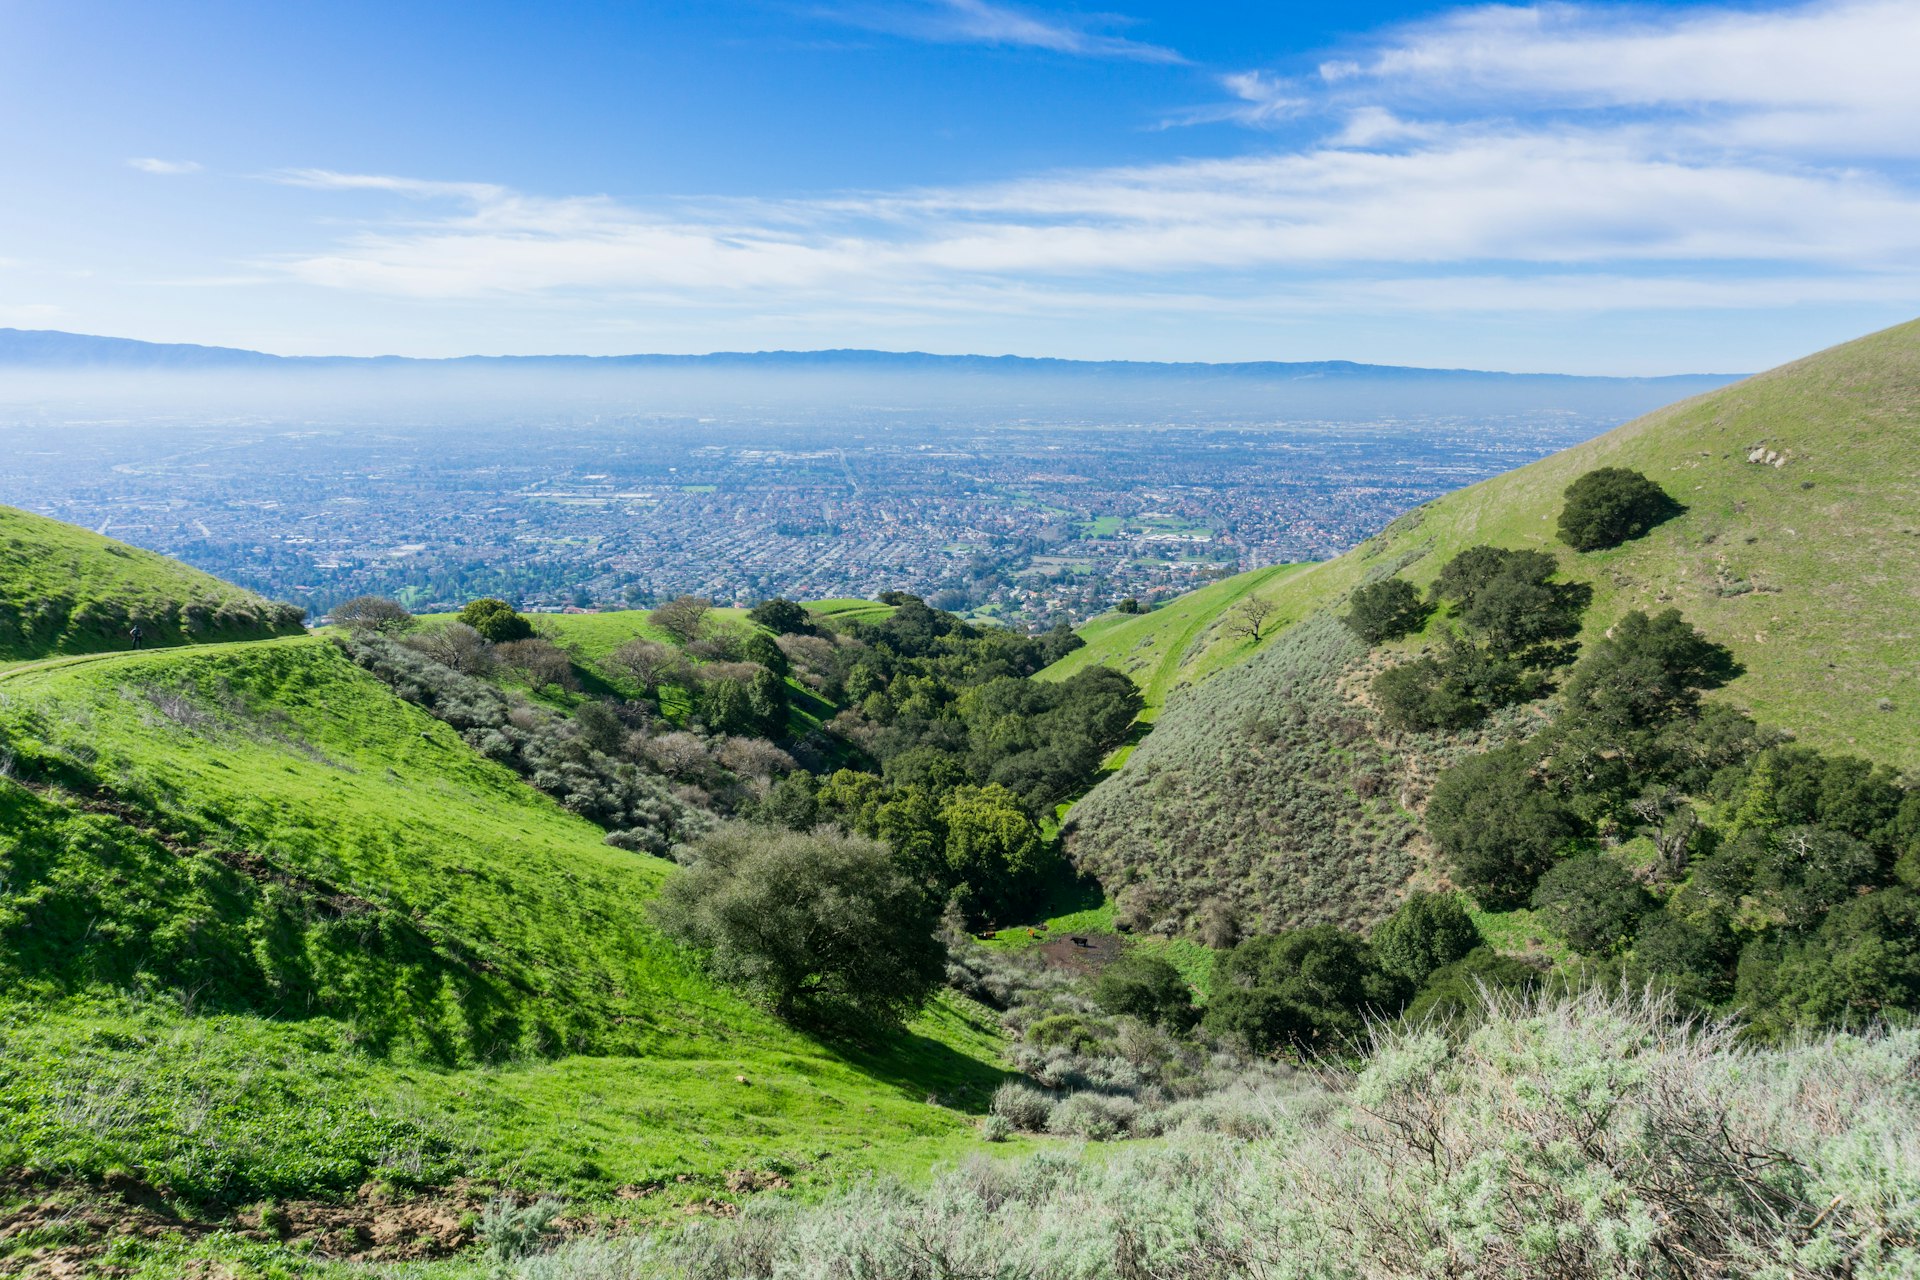 View towards San Jose, California